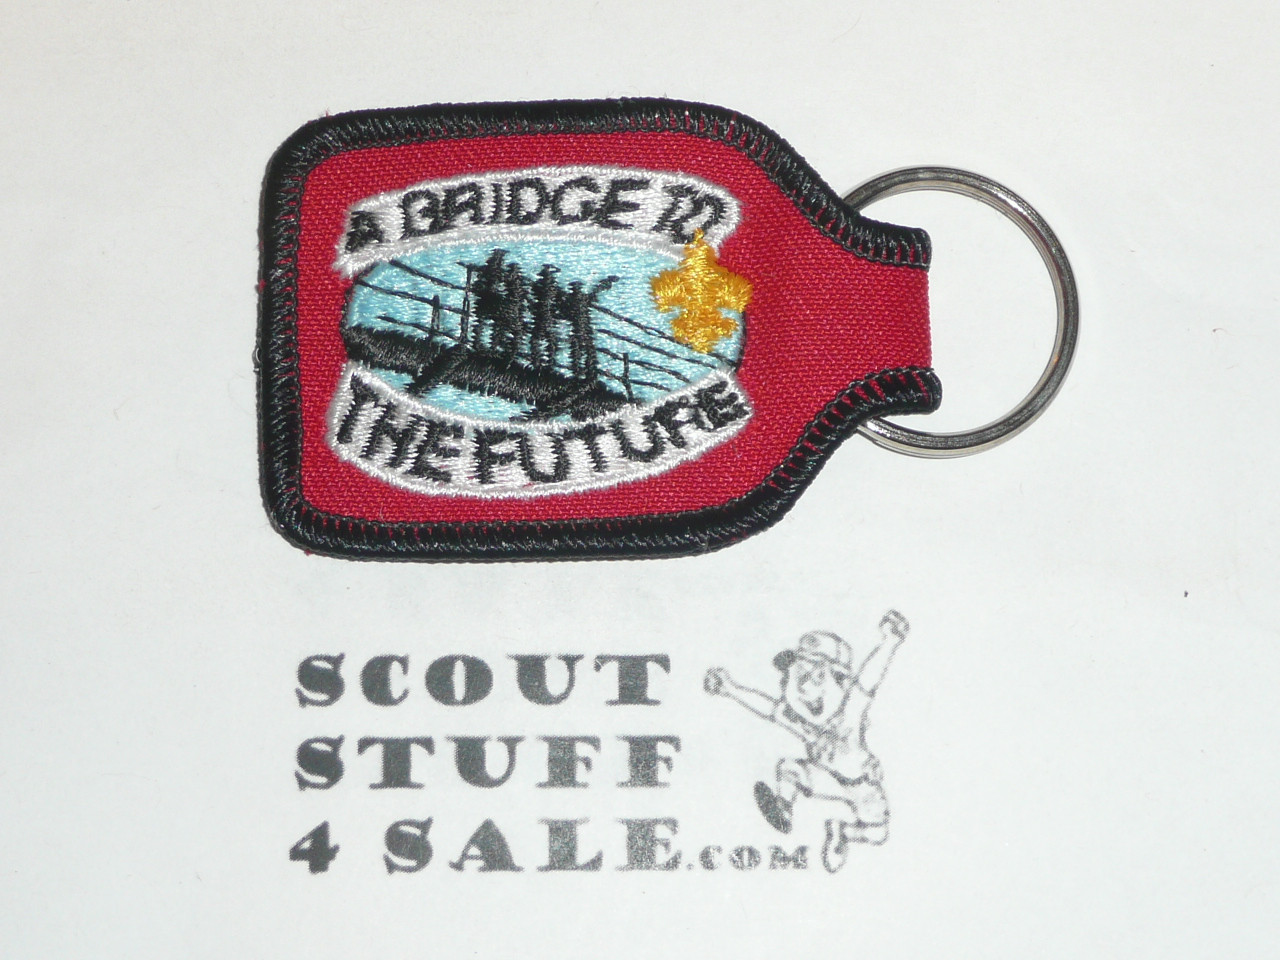 1993 National Jamboree Key Chain, fabric